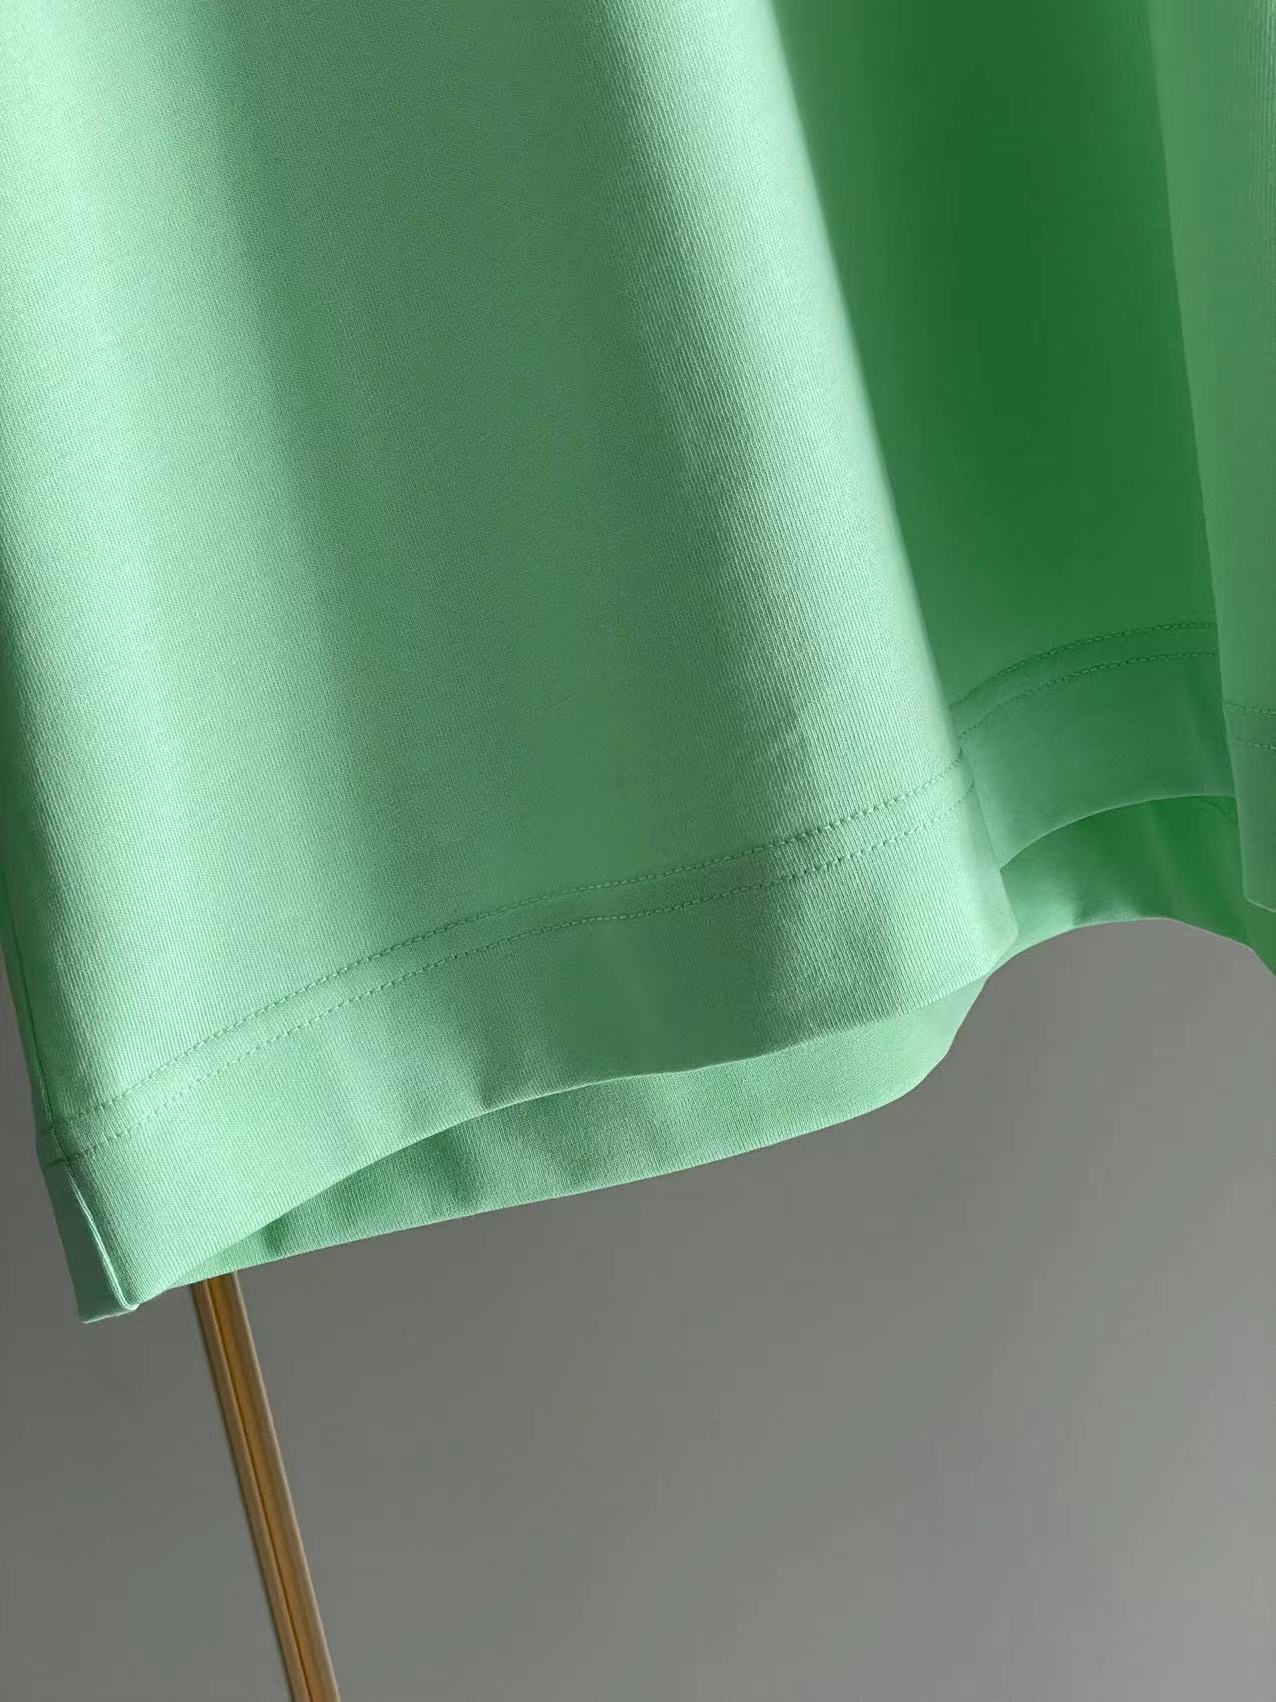 限定セール低価 ジバンシィトートバッグ激安通販 純綿 Tシャツ 半袖 トップス シンプル ロックプリント 大人気 3色可選 グリーン_7